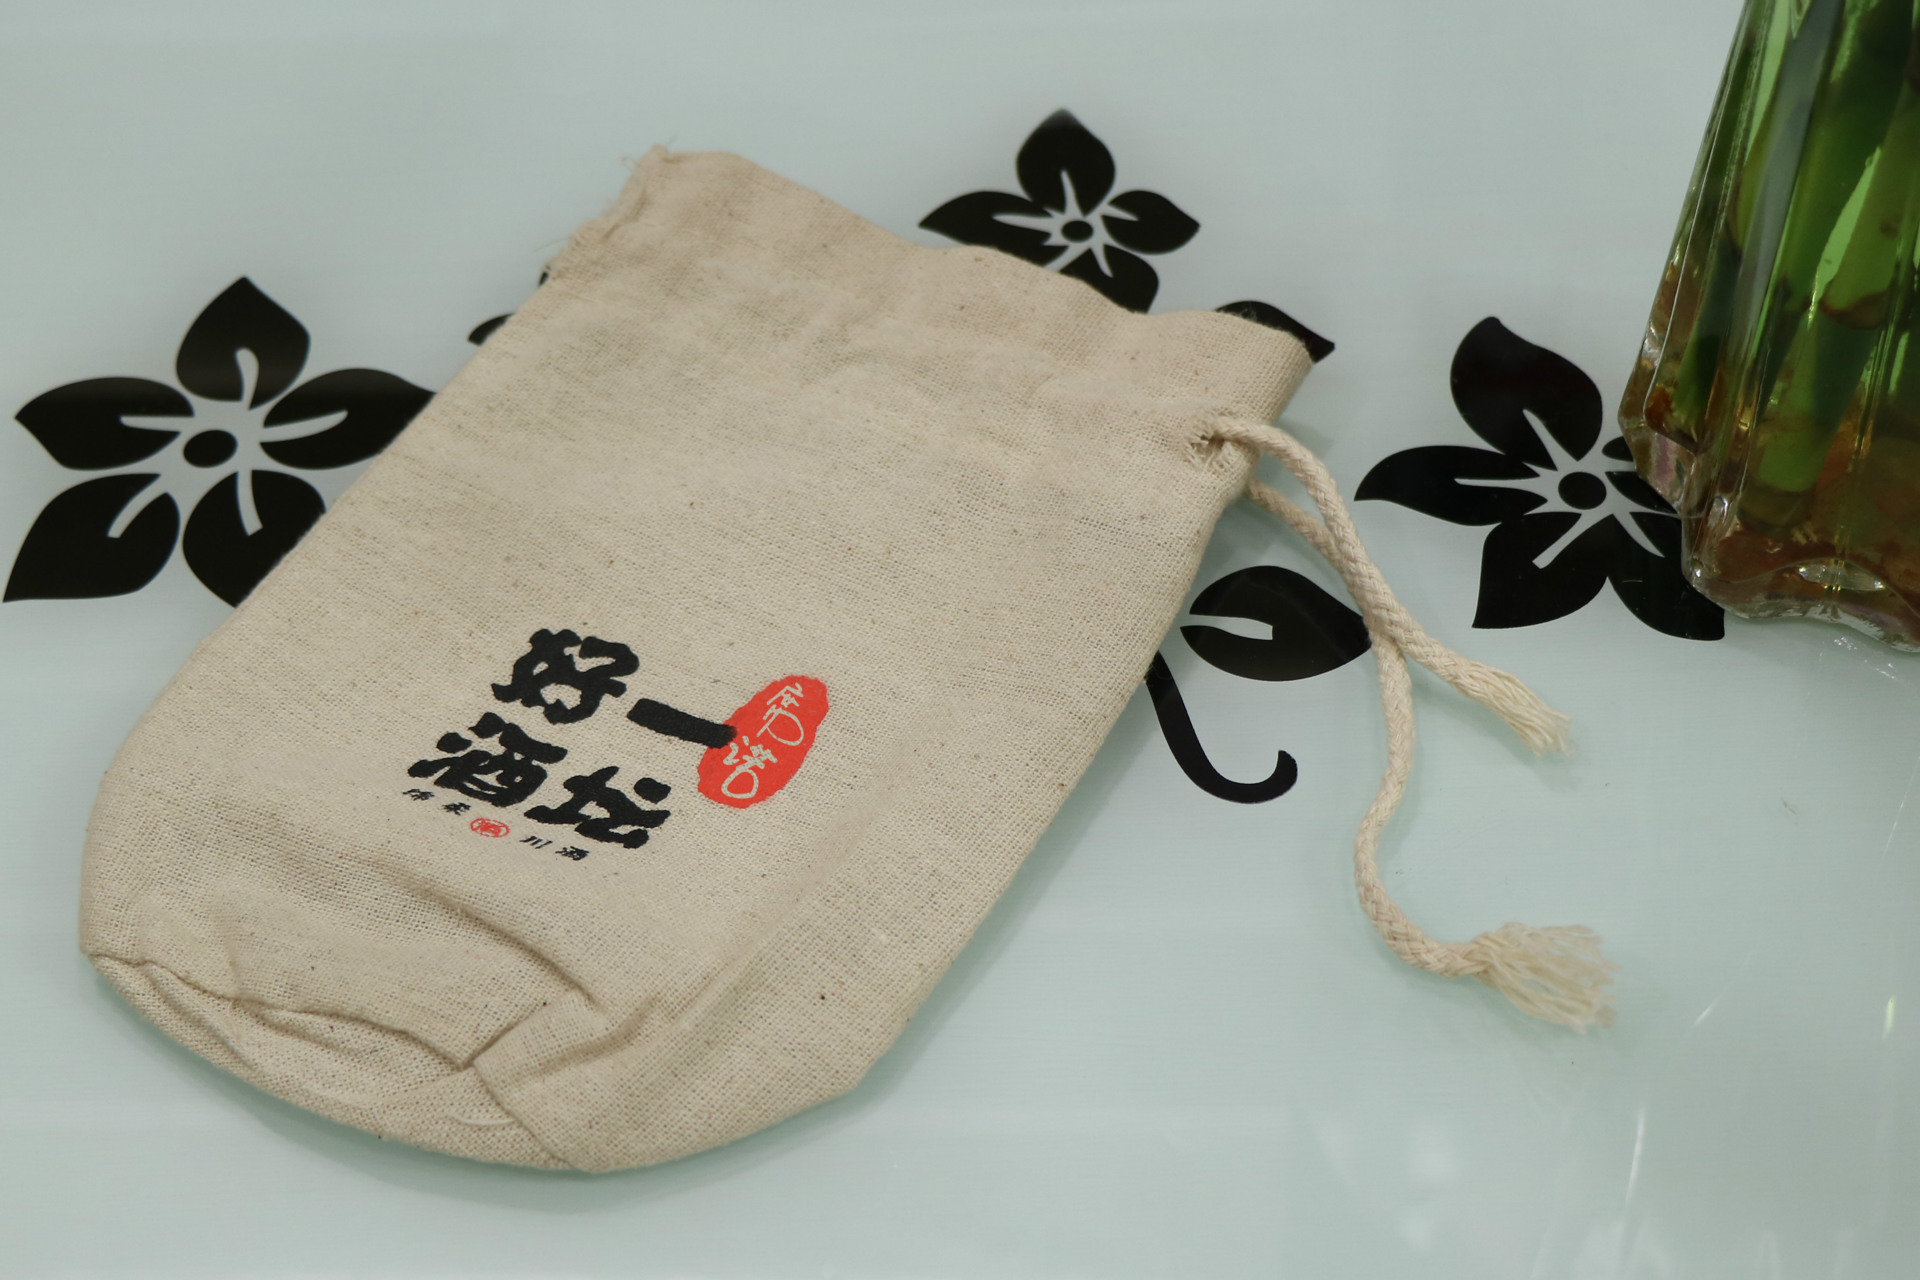 酒袋包装亚麻用布 茶叶盒子包装面料 长期现货供应棉麻面料